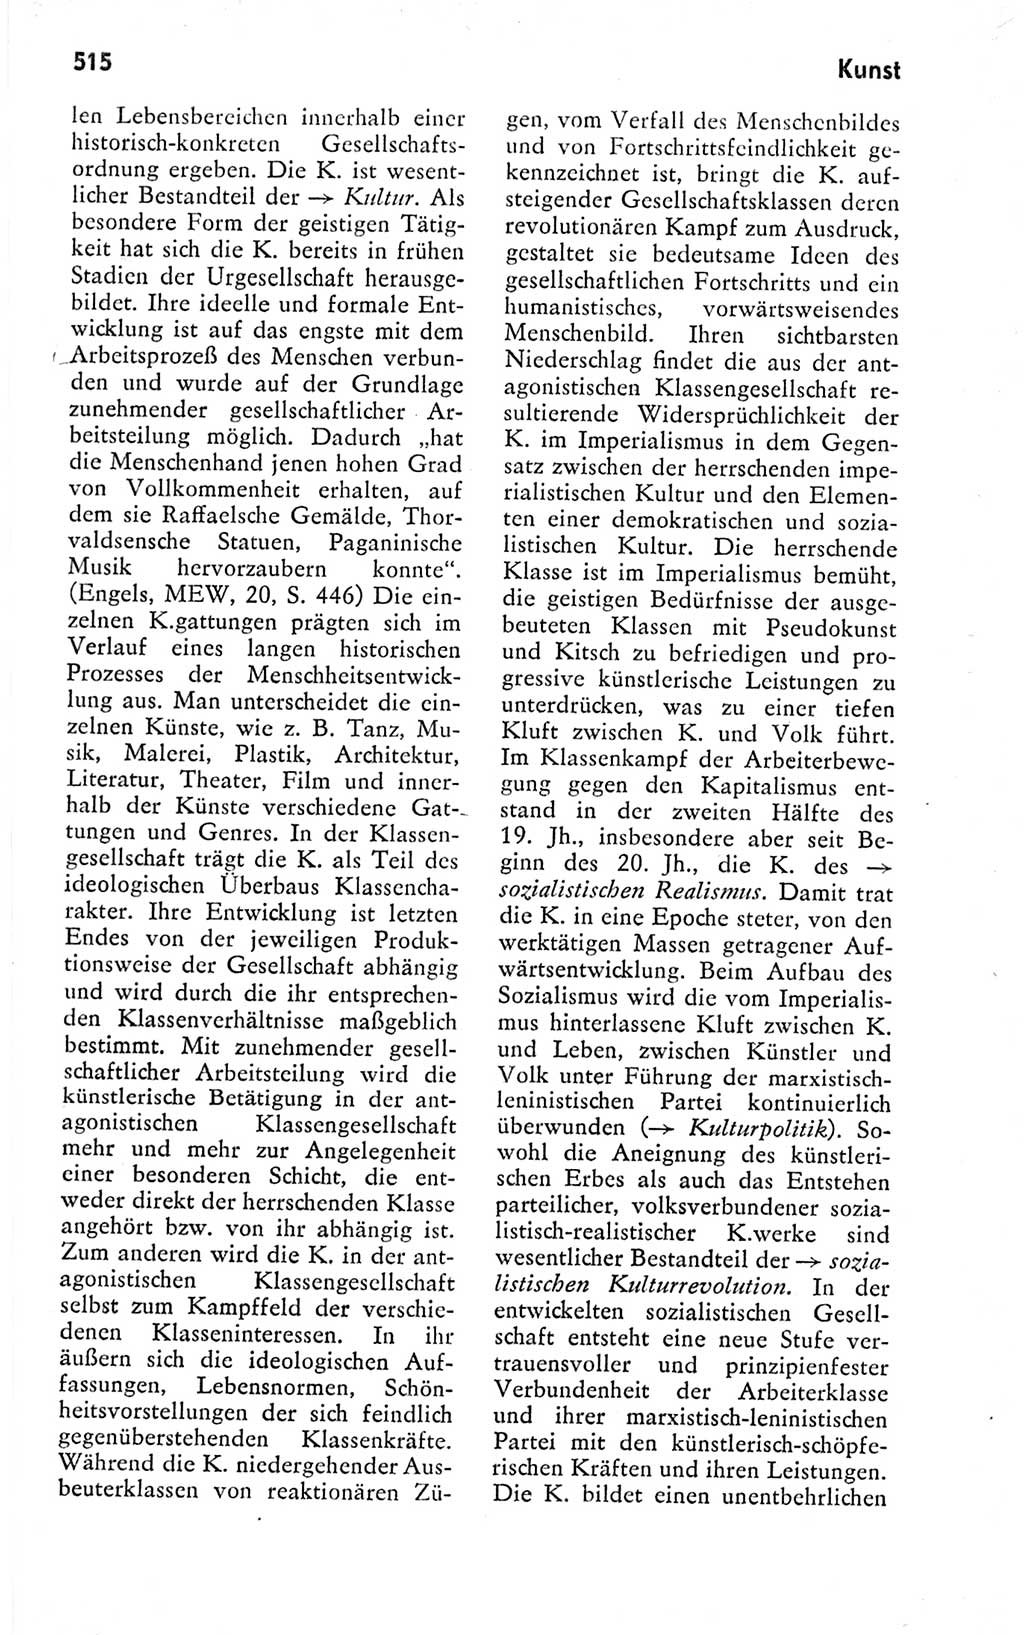 Kleines politisches Wörterbuch [Deutsche Demokratische Republik (DDR)] 1978, Seite 515 (Kl. pol. Wb. DDR 1978, S. 515)